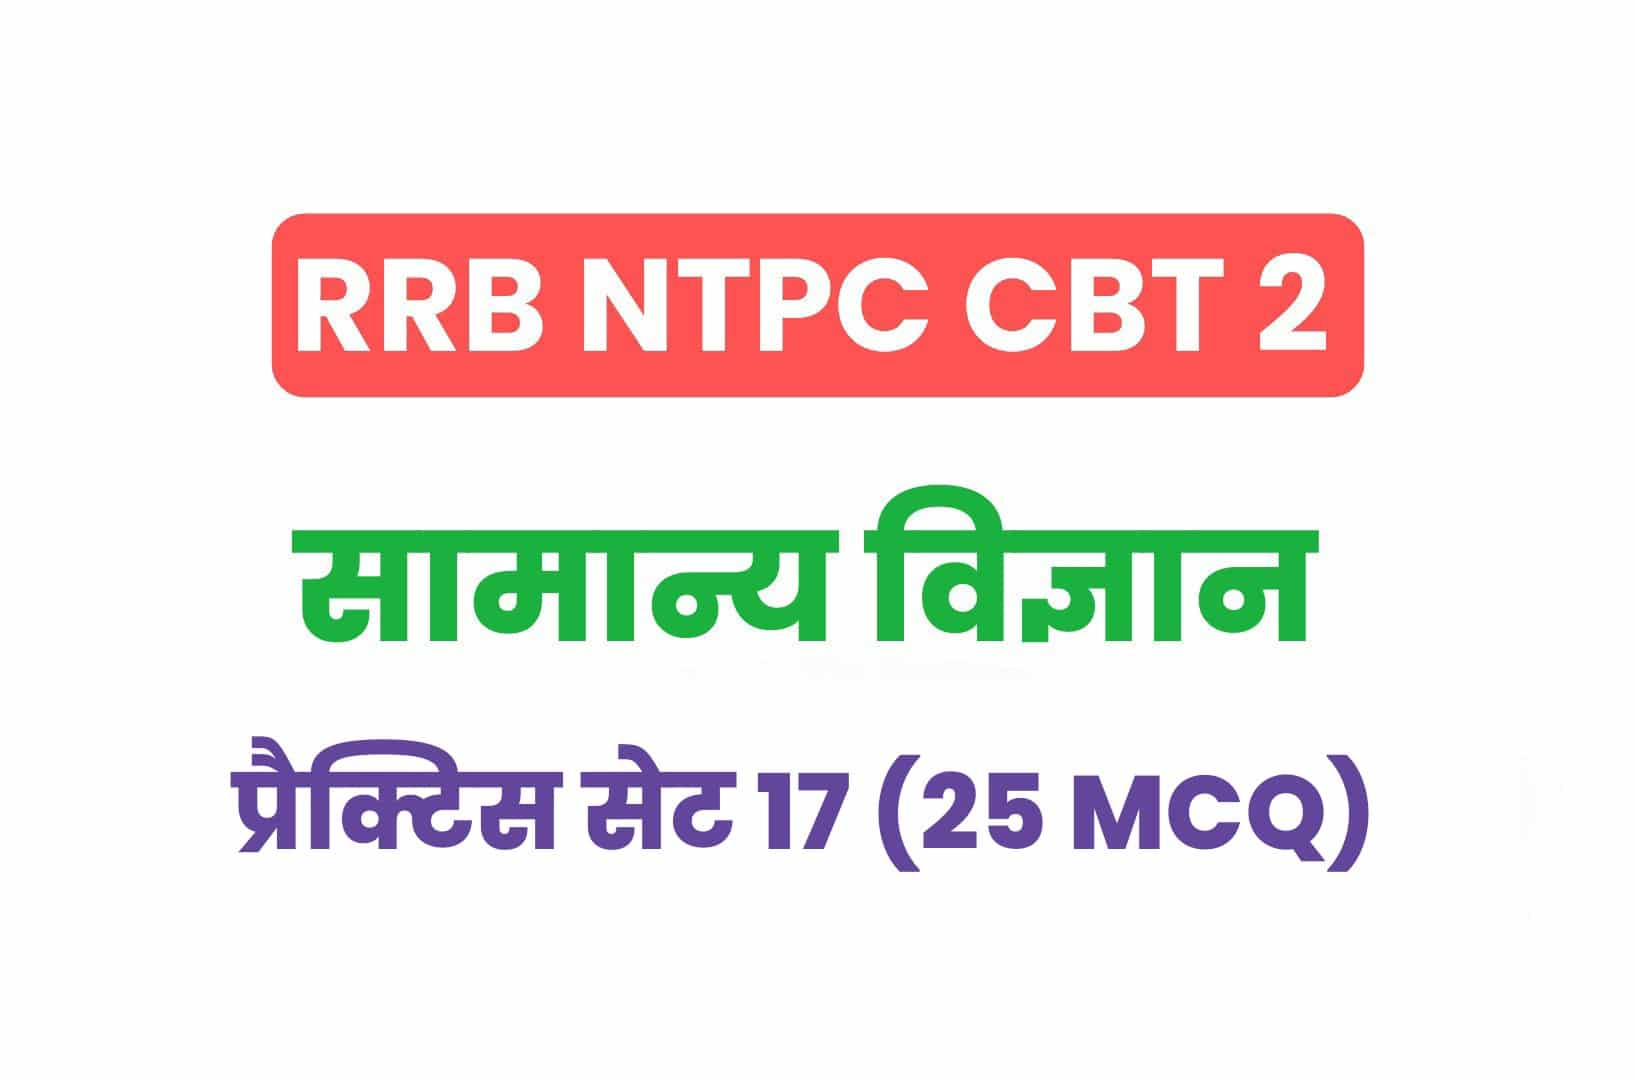 RRB NTPC CBT 2 Science प्रैक्टिस सेट 17: सामान्य विज्ञान के इन महत्वपूर्ण प्रश्नों का जरूर अध्ययन करें